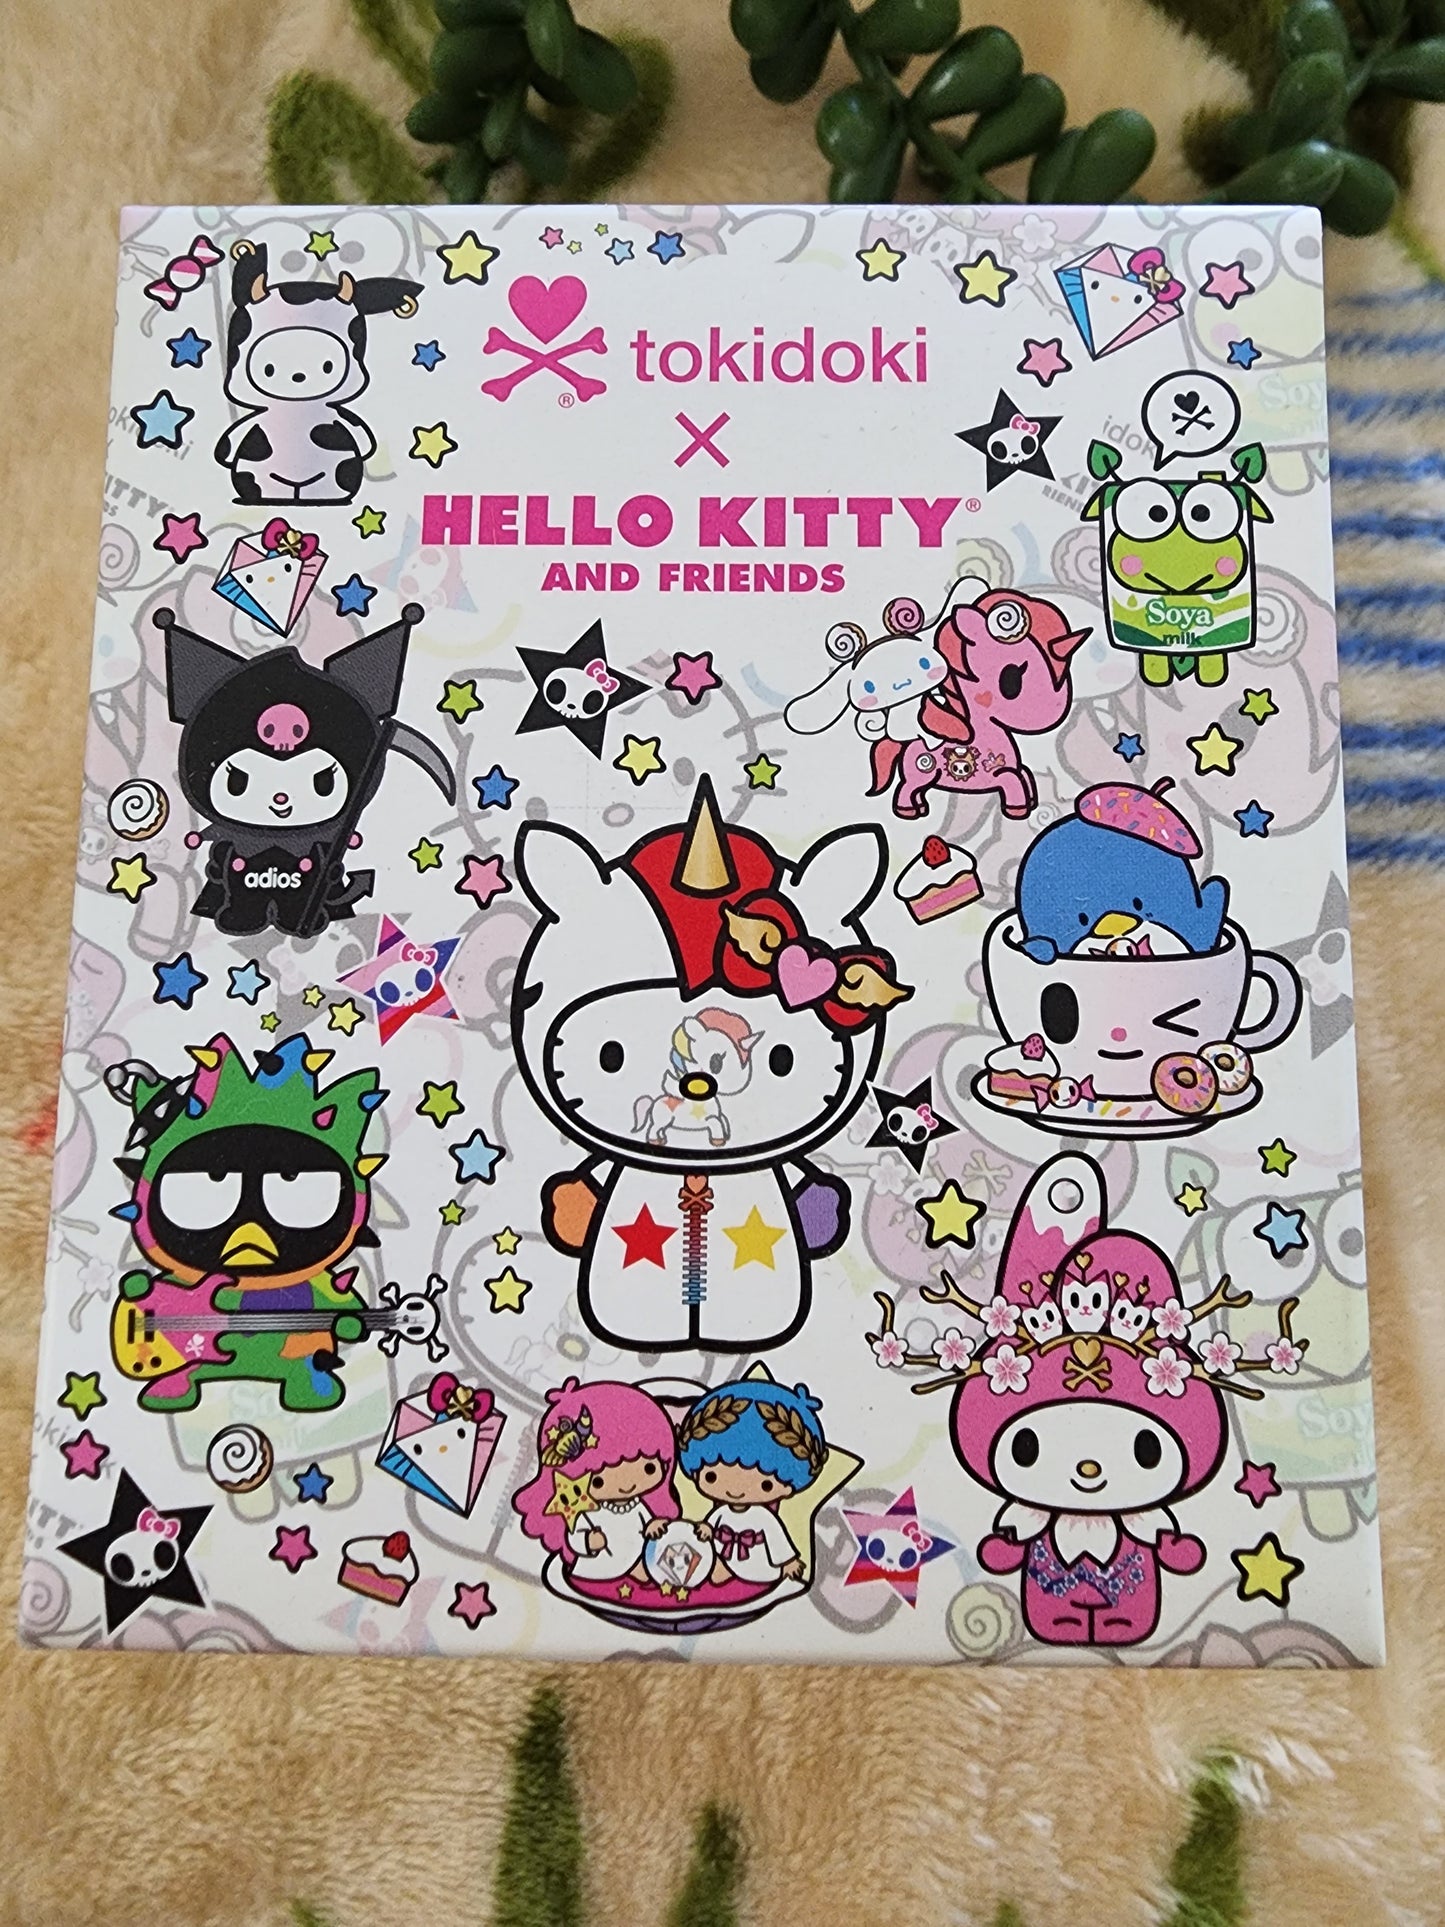 Tokidoki Hello Kitty Series 1 Mystery Figures